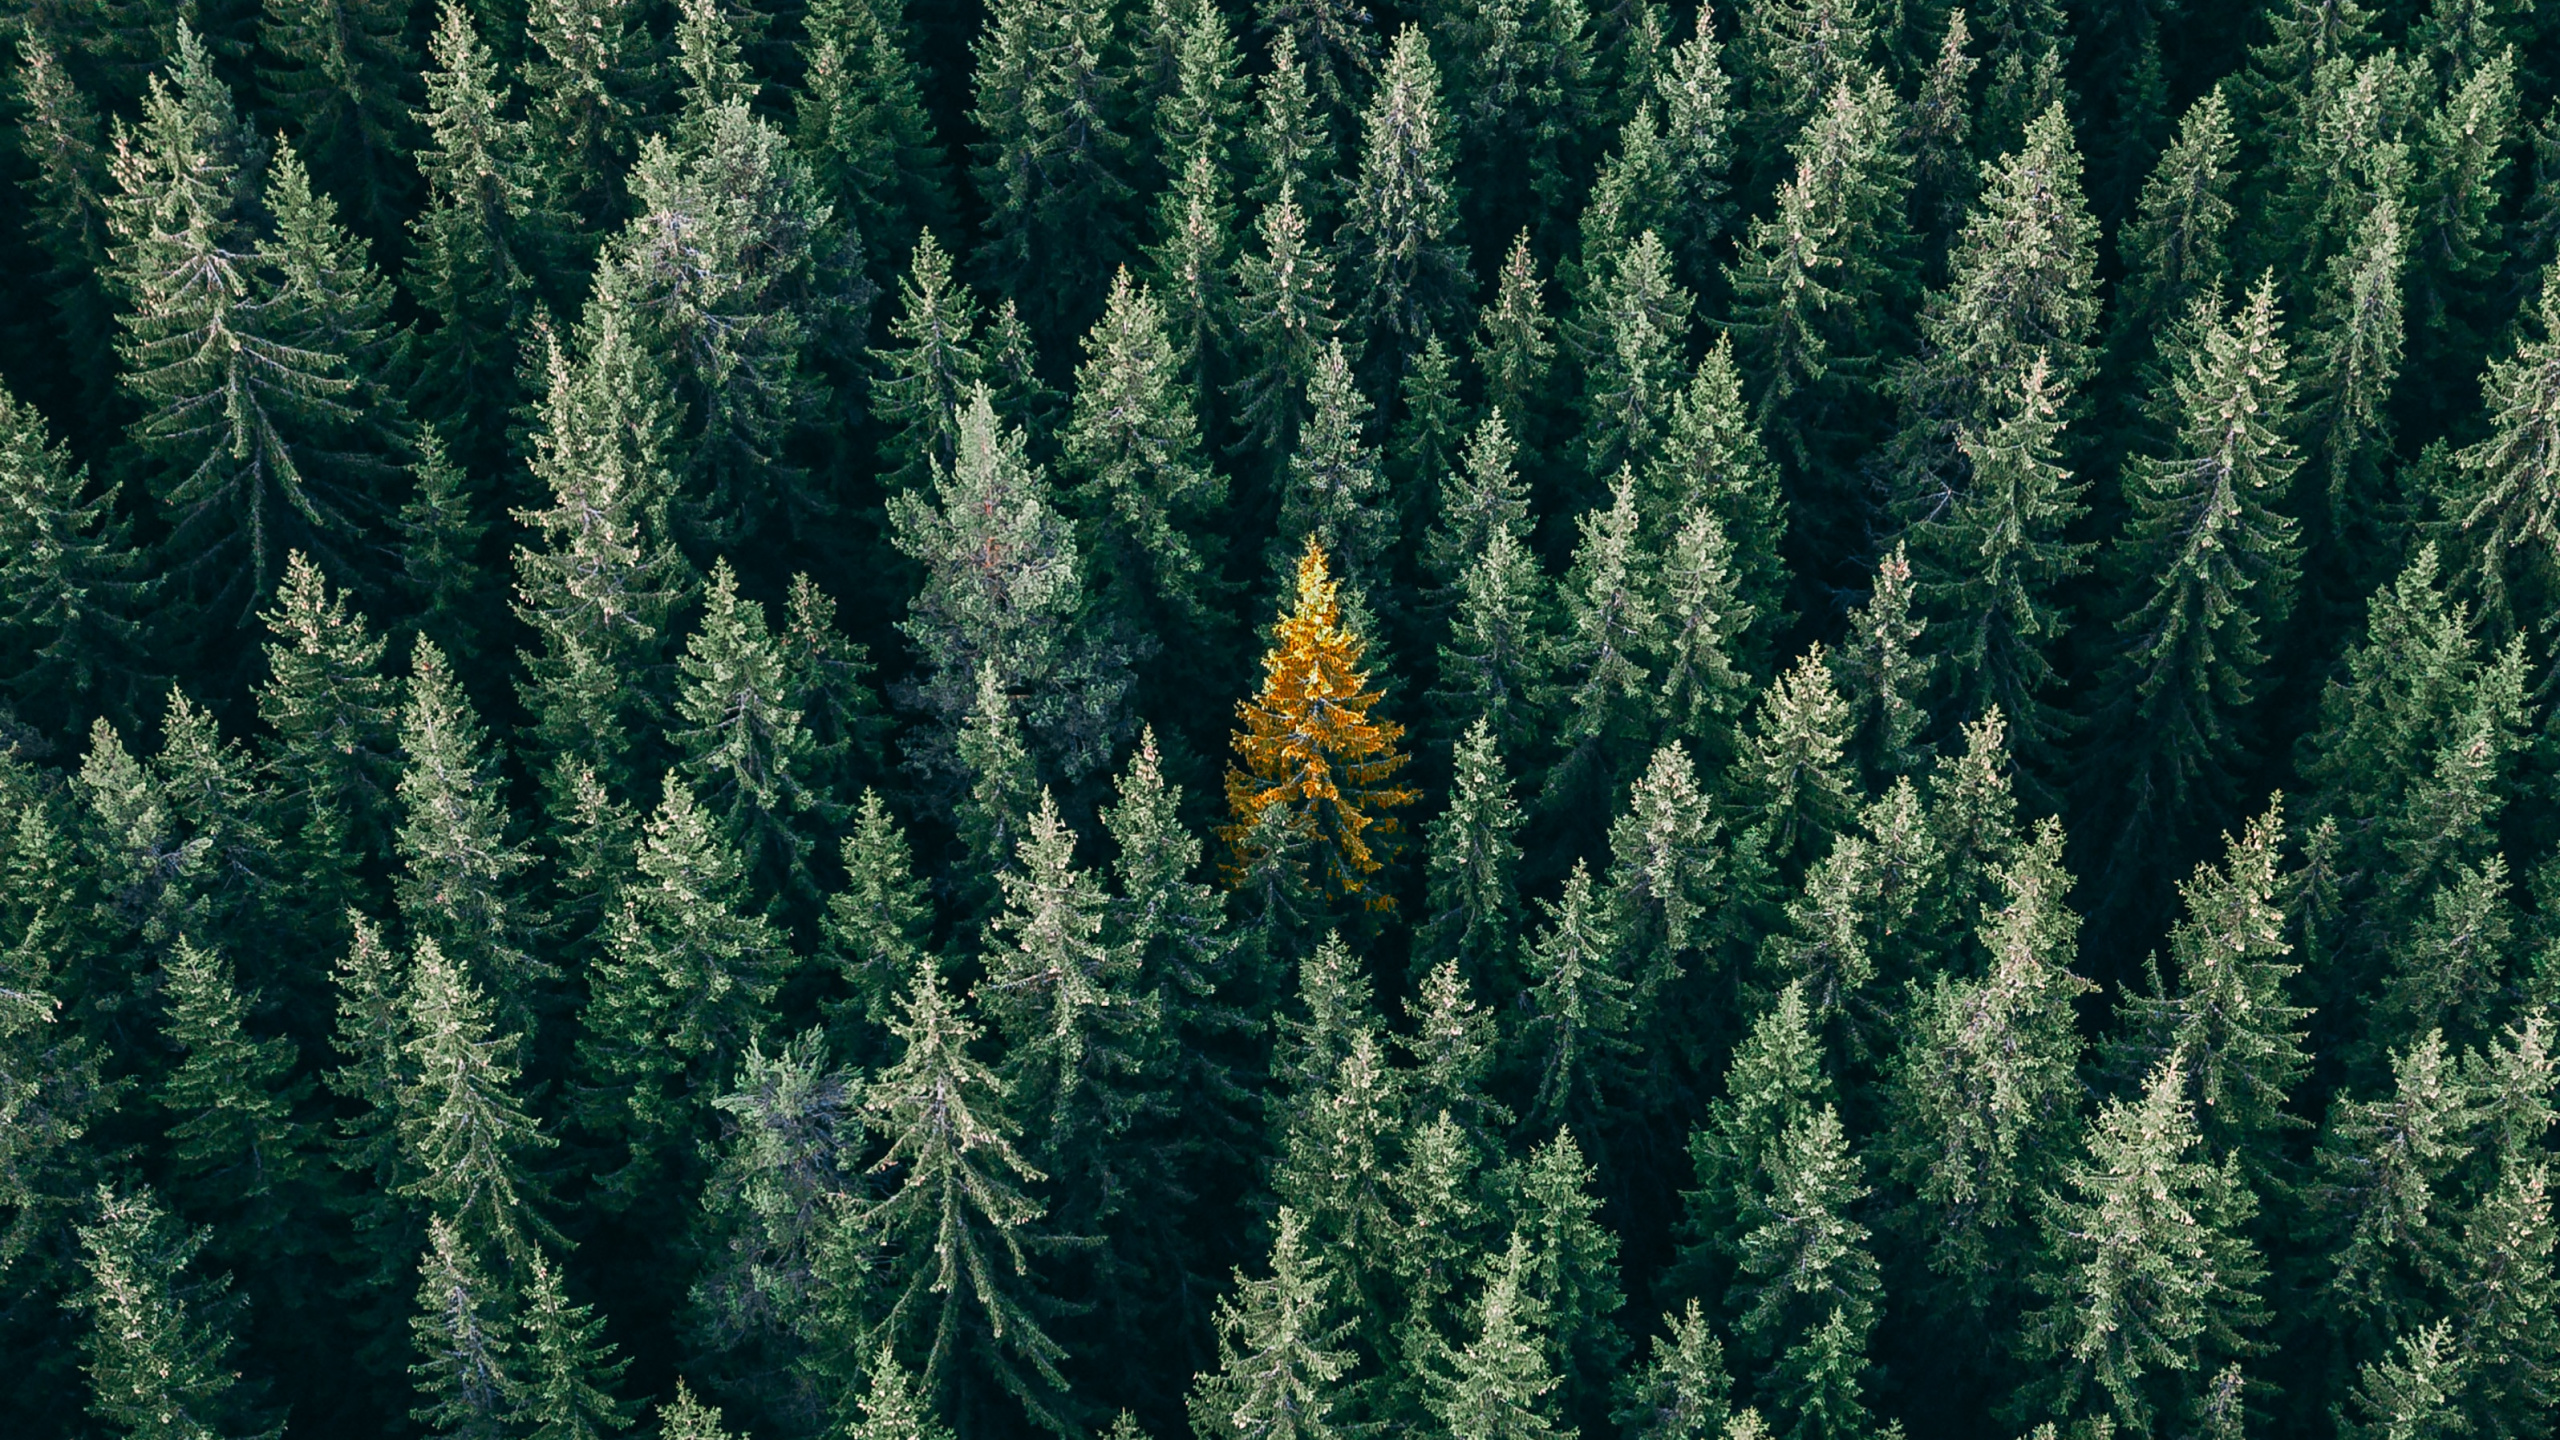 植被, 哥伦比亚云杉, 苦瓜杉, 黄色杉, 加拿大的杉木 壁纸 2560x1440 允许